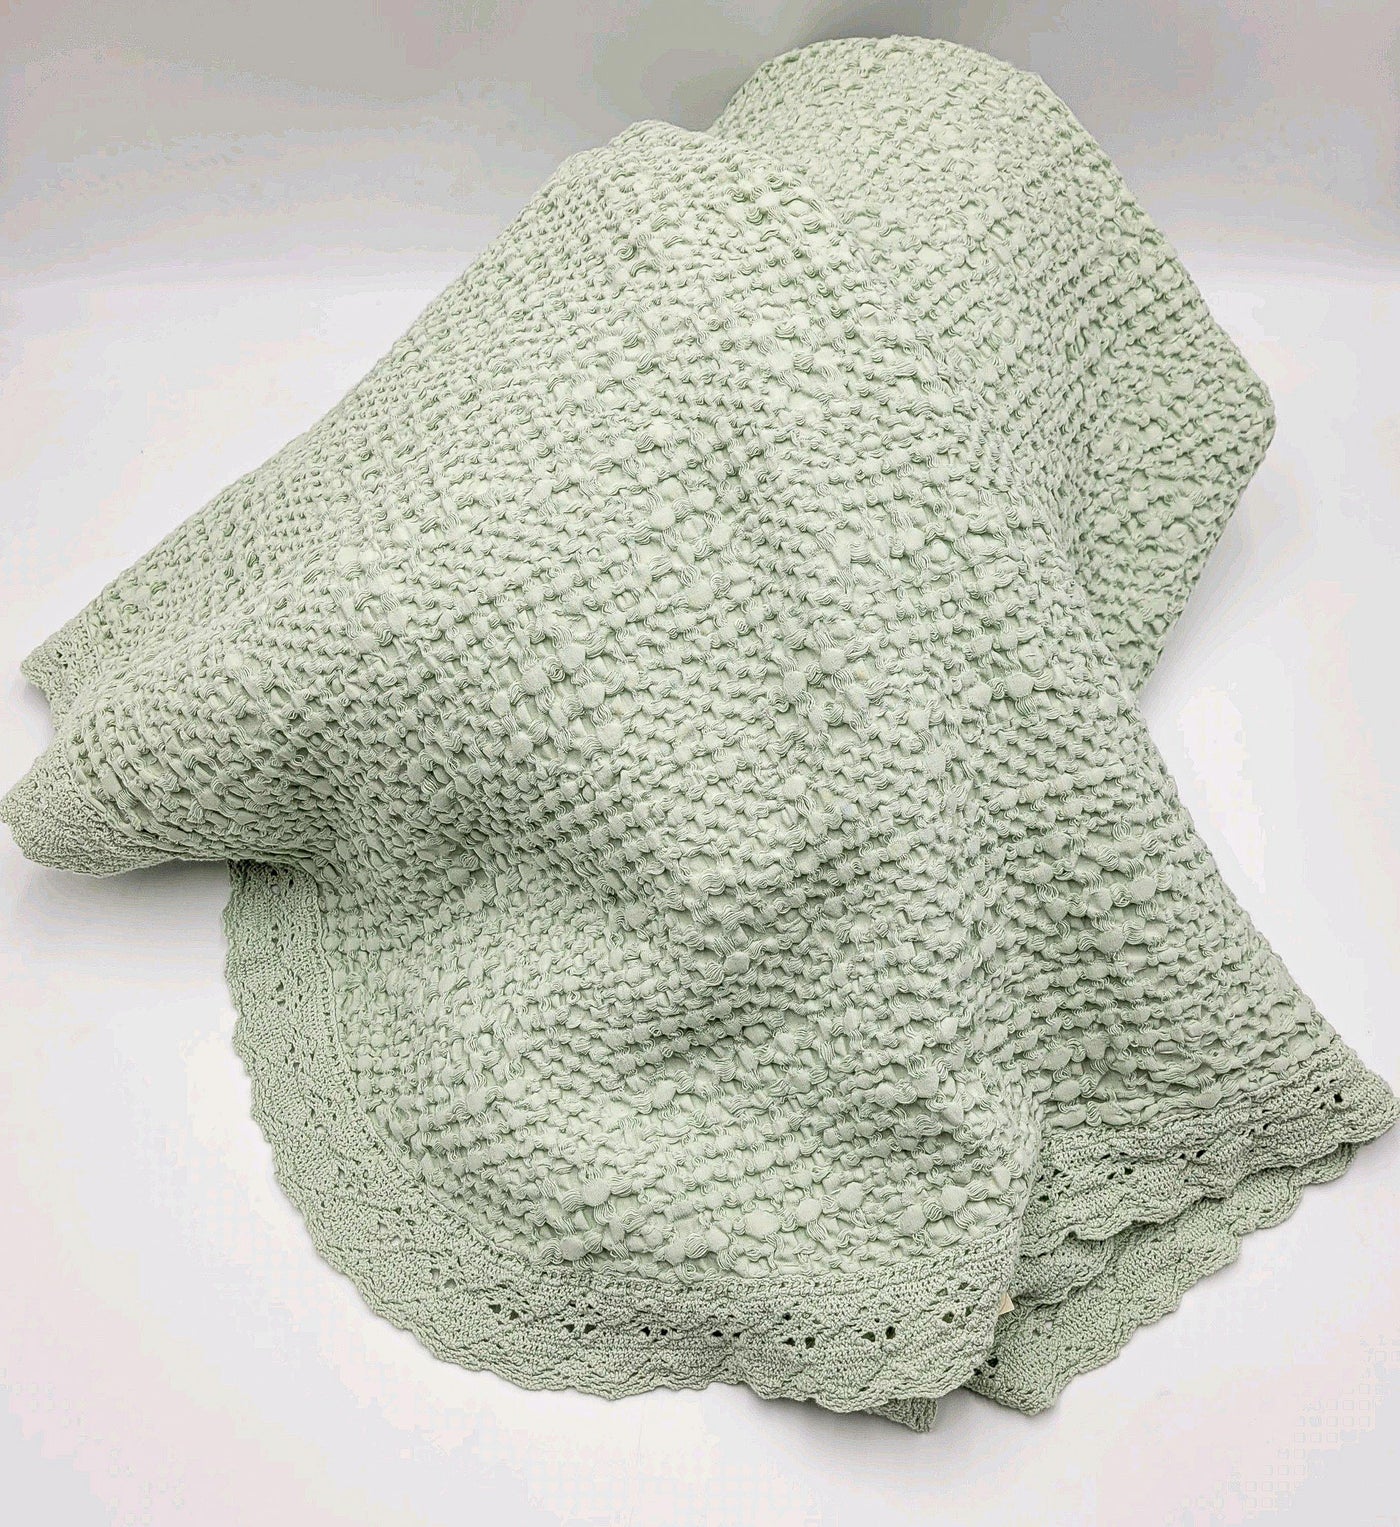 Textil Colchas Fibras naturales Verde